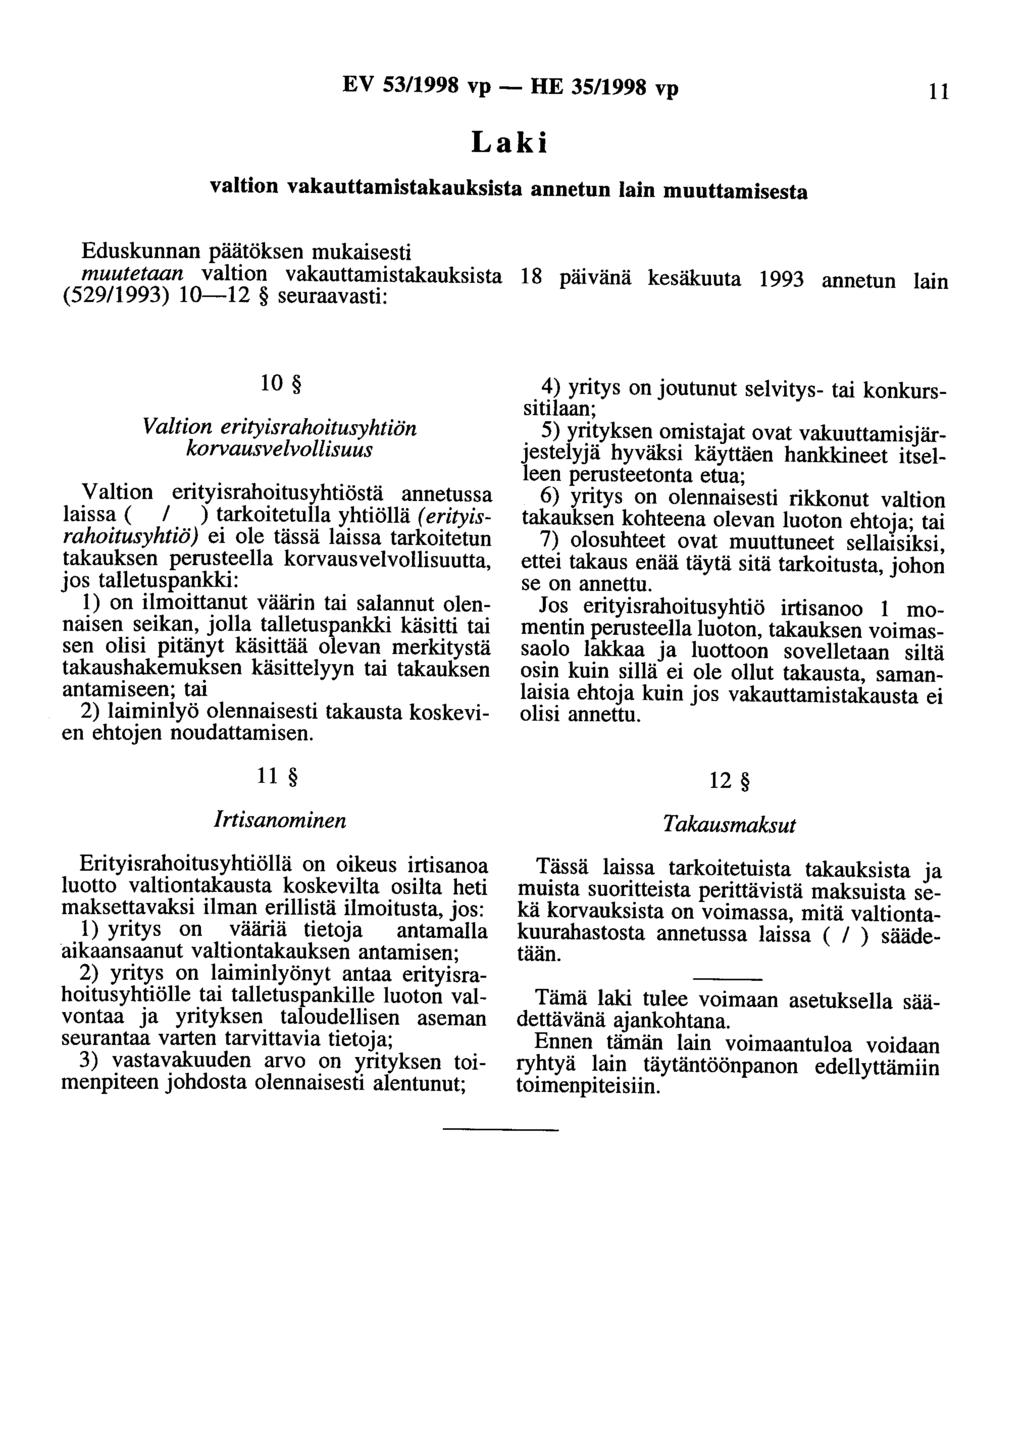 EV 53/1998 vp - HE 35/1998 vp 11 valtion vakauttamistakauksista annetun lain muuttamisesta Eduskunnan päätöksen mukaisesti muutetaan valtion vakauttamistakauksista 18 päivänä kesäkuuta 1993 annetun